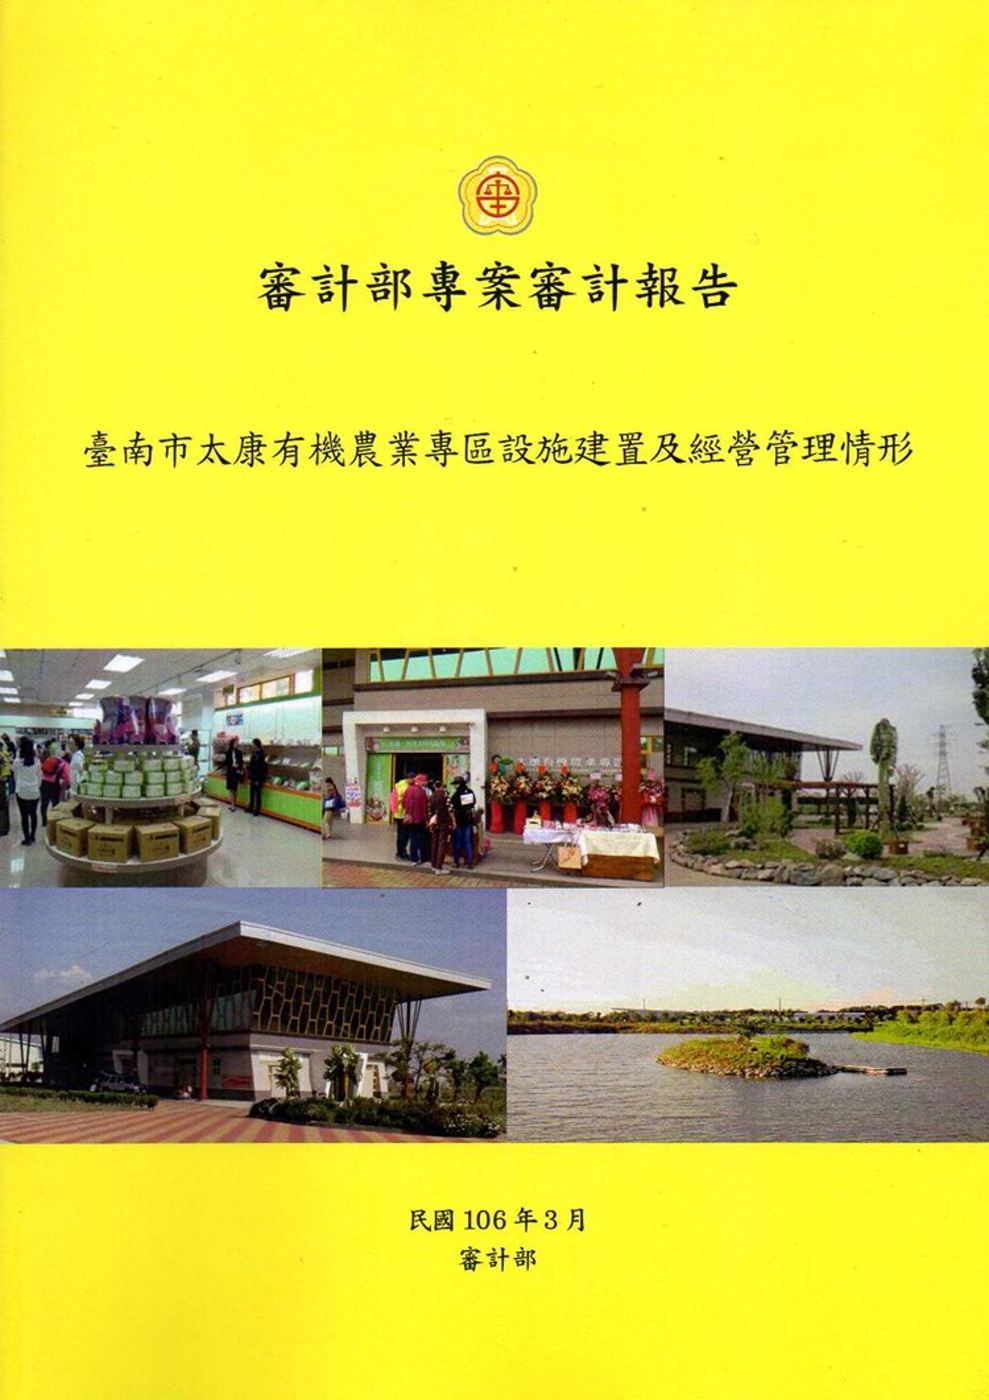 臺南市太康有機農業專區設施建置及經營管理情形